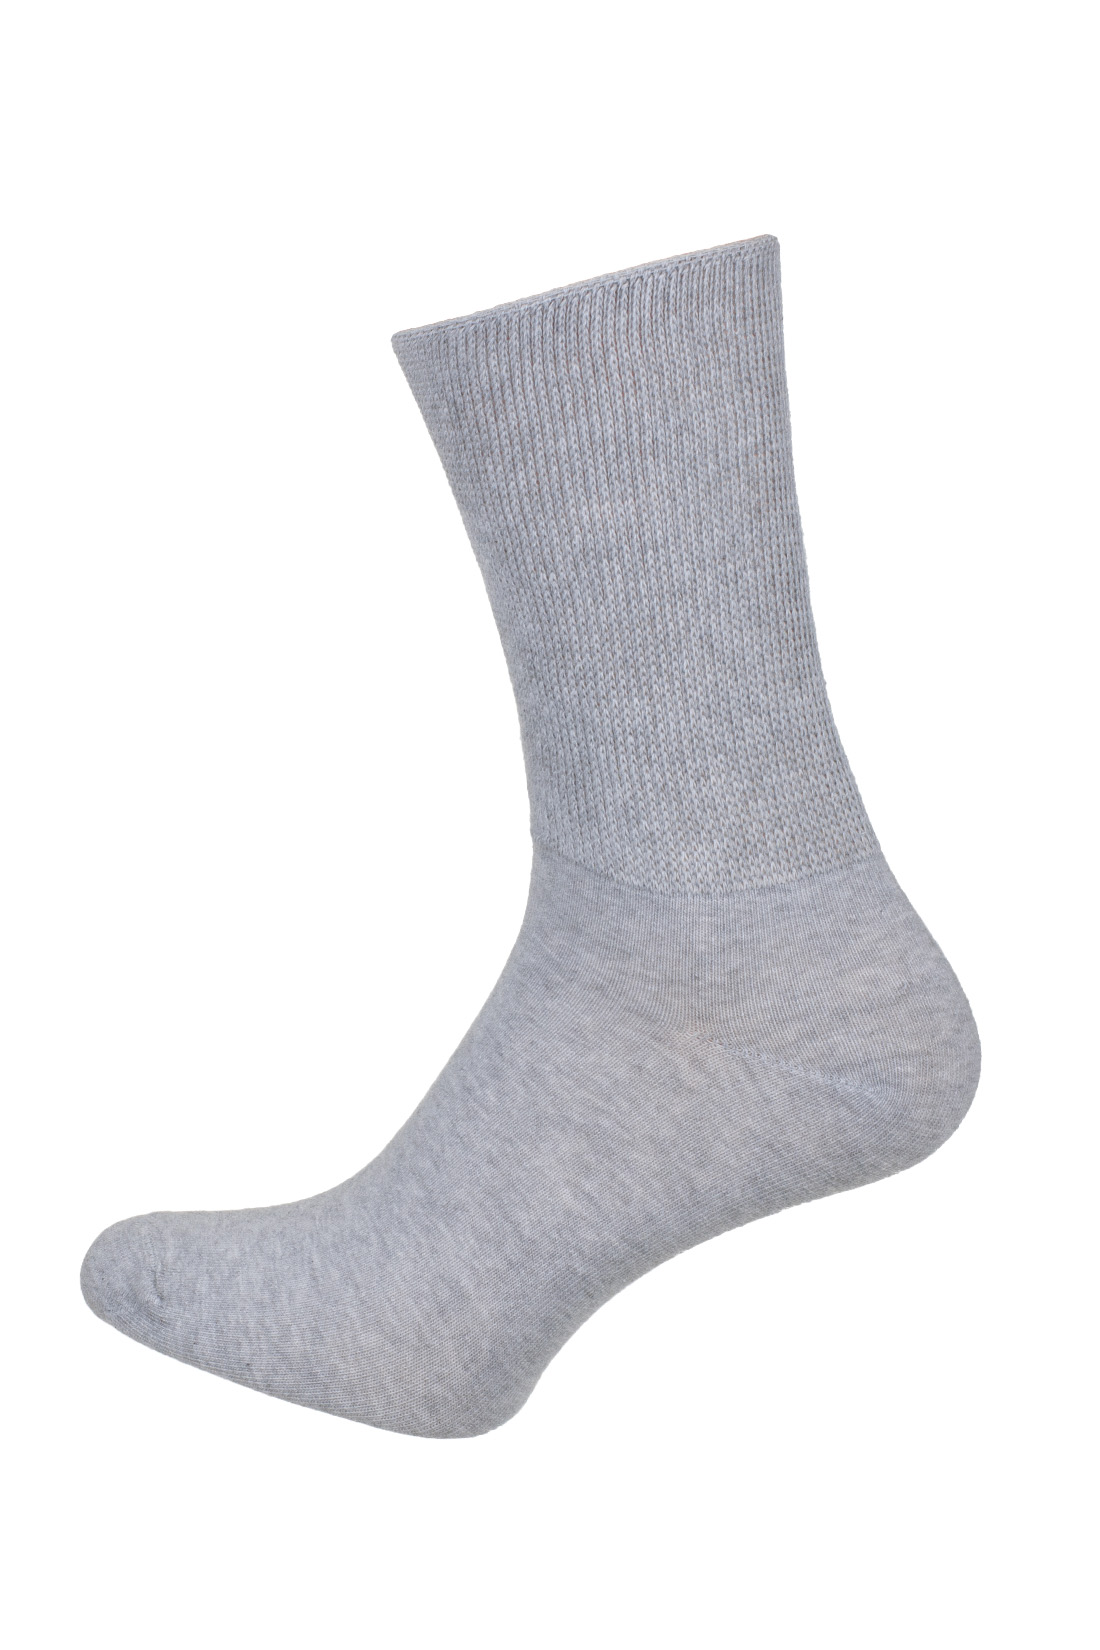 Medische sokken Gray-medische sokken - wit -medische bariatric sokken